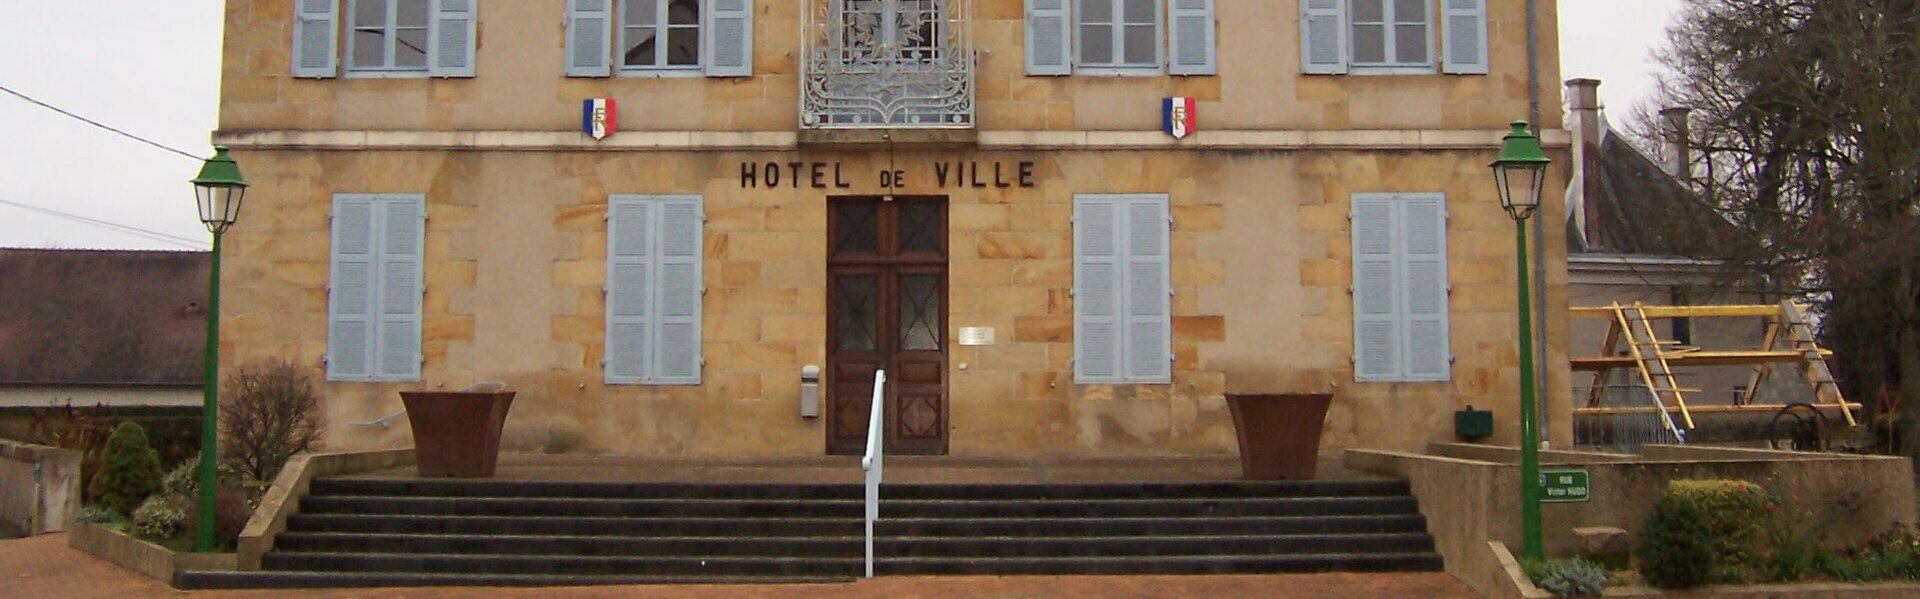 Liste des entreprises Mairie Montmarault Allier centre